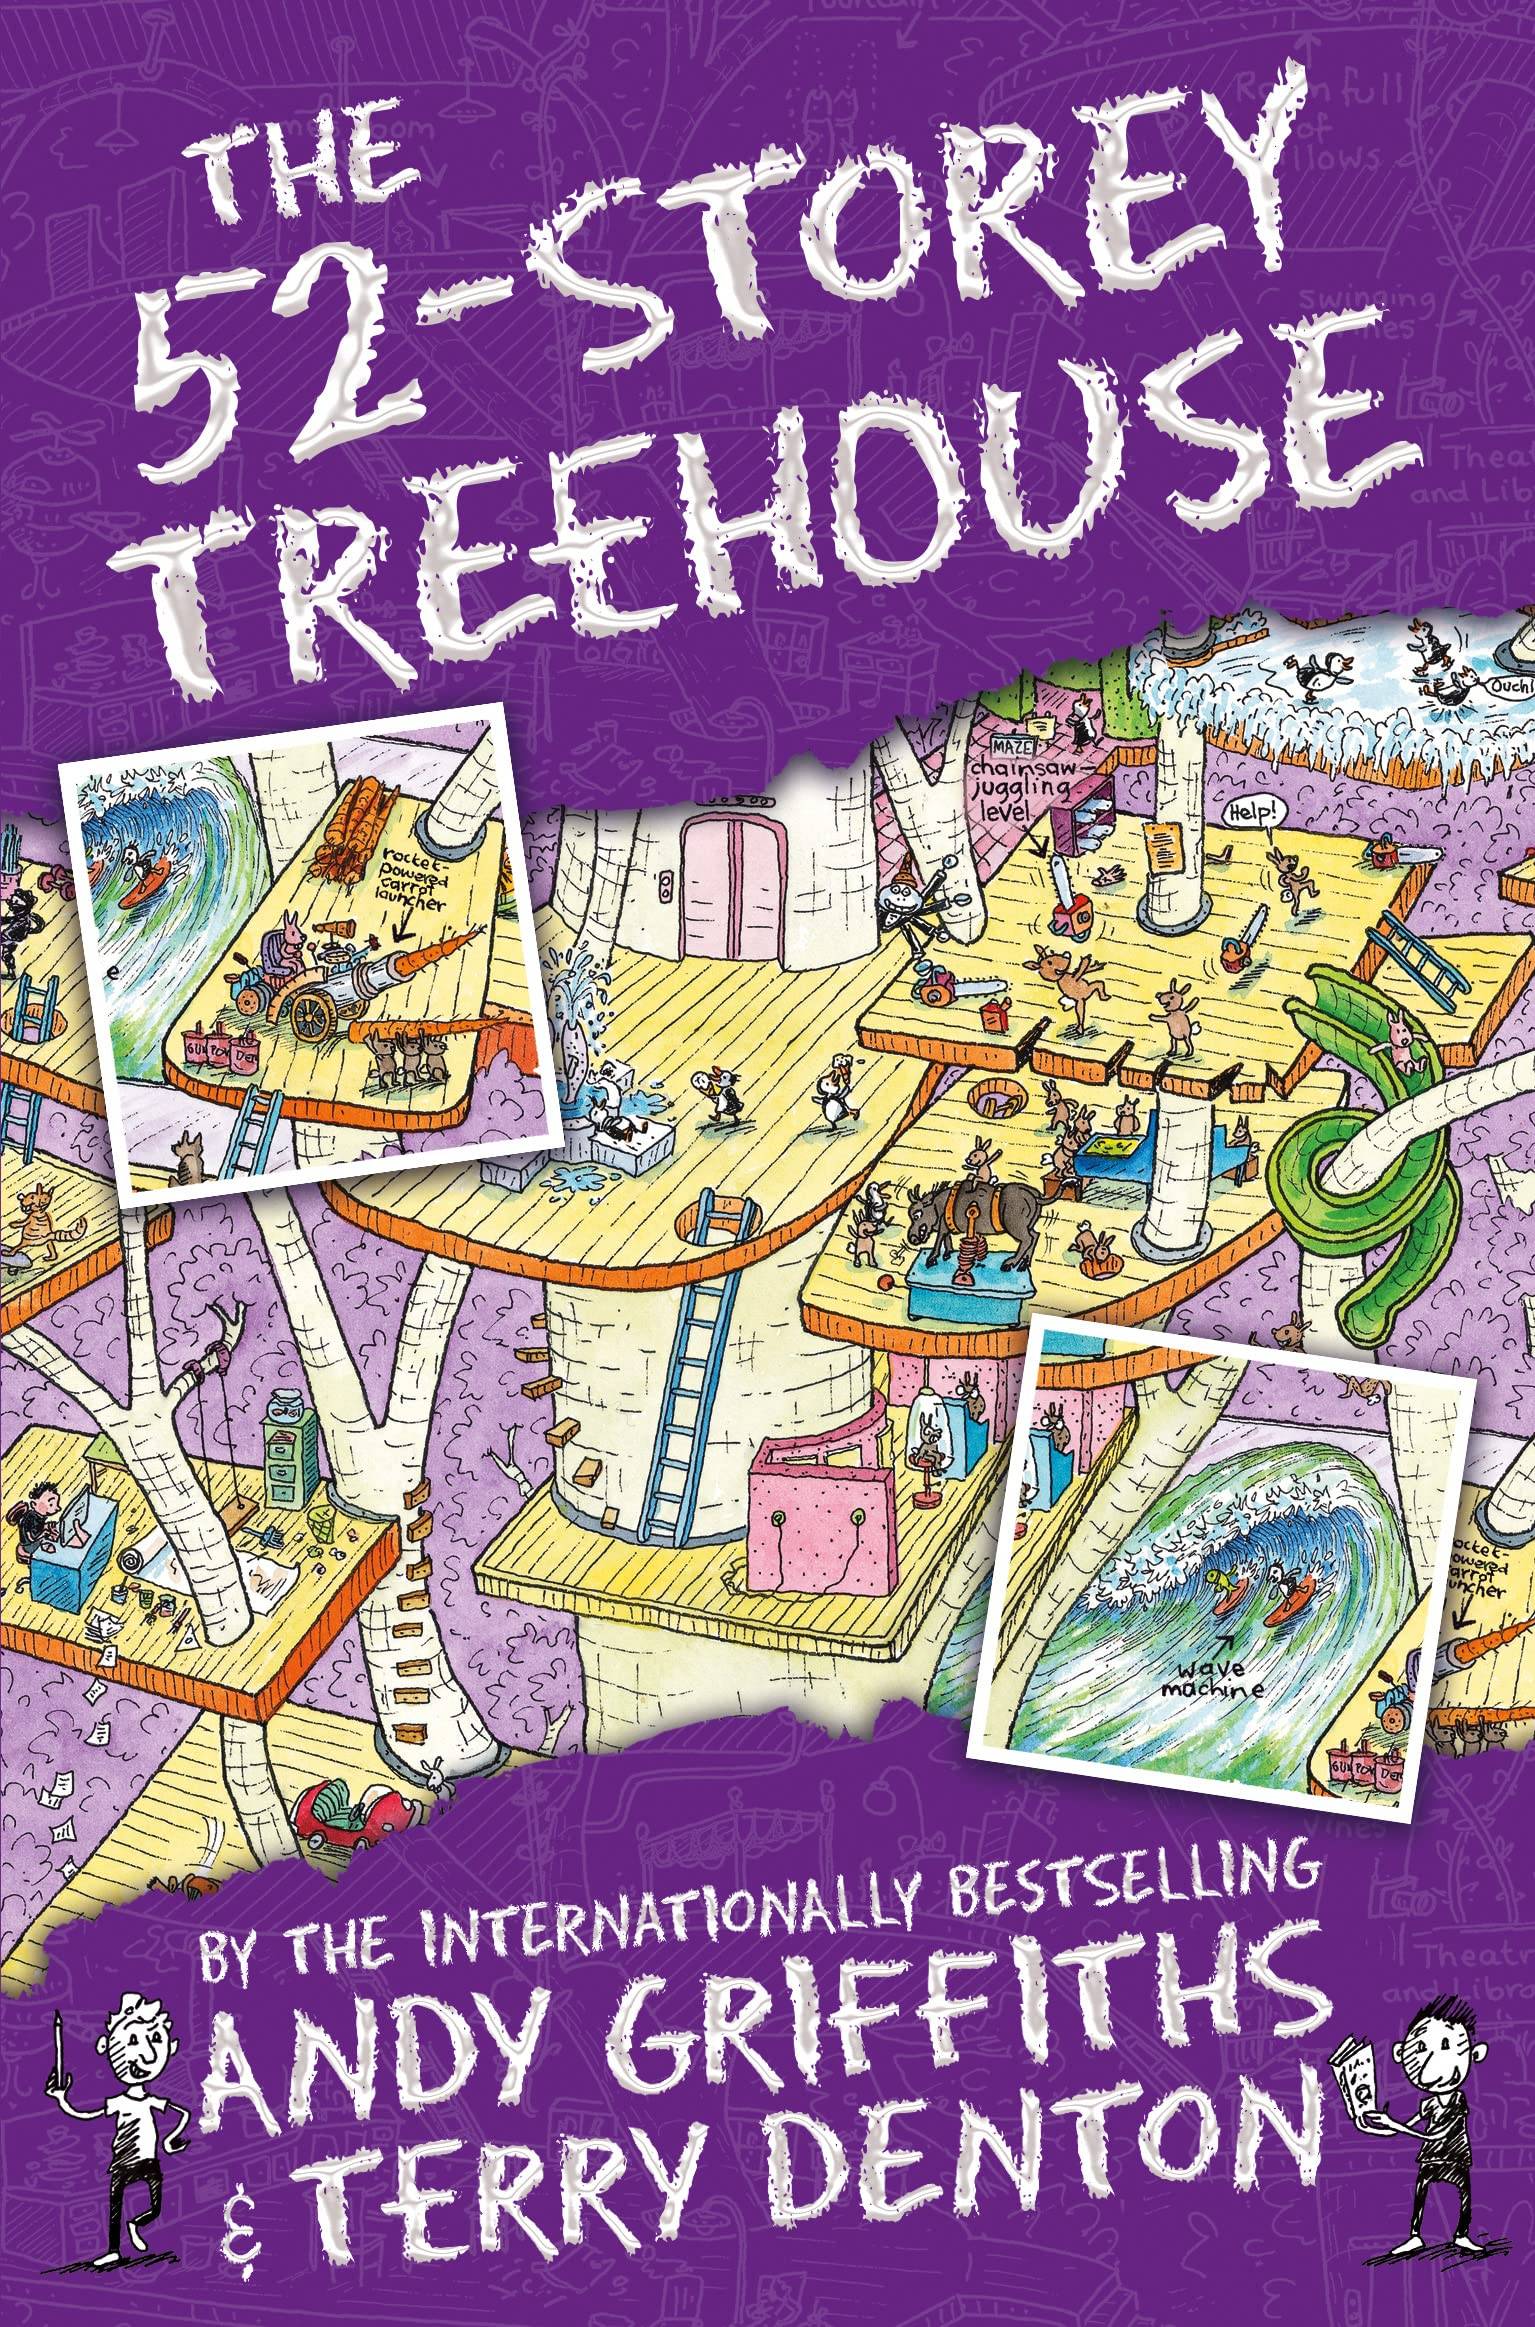 IMG : The 52-storey treehouse